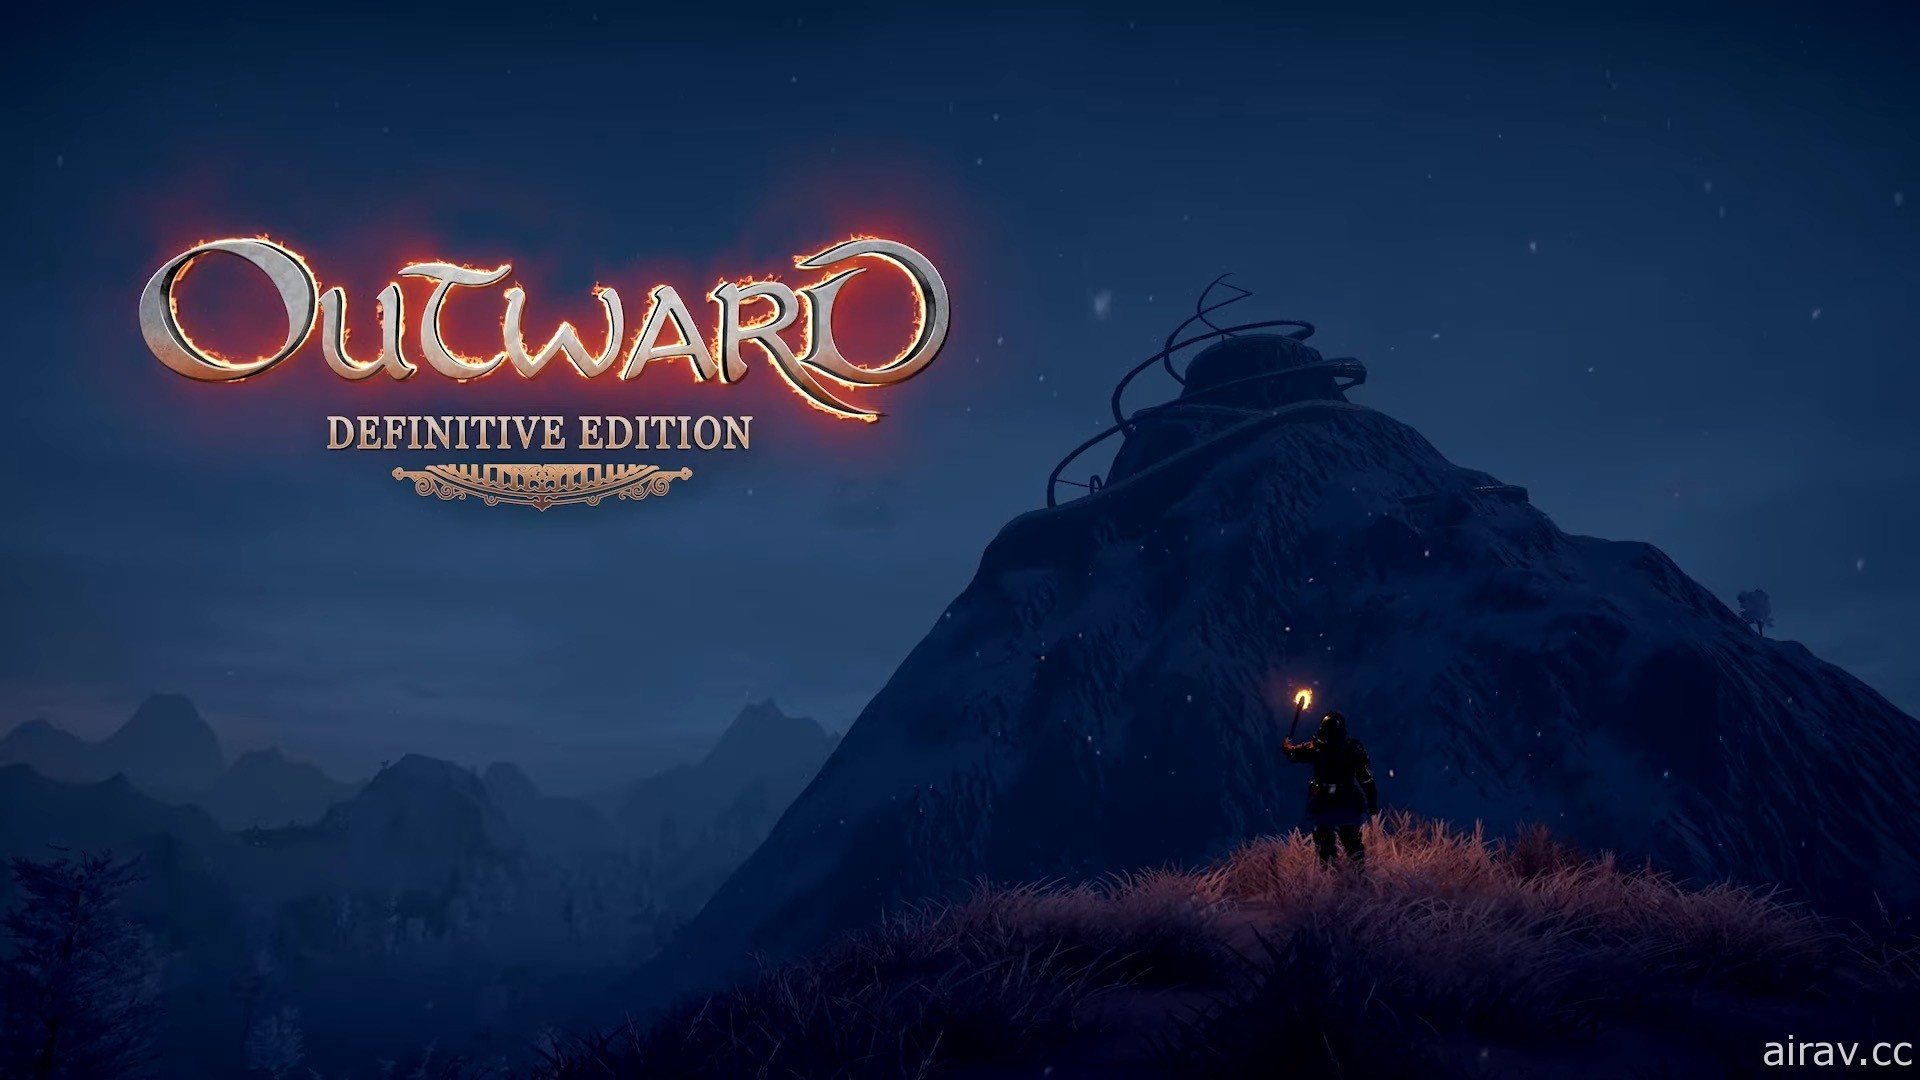 《物质世界 Outward》决定版现已发售 为魔法世界欧鲁拉的终极冒险整装出发